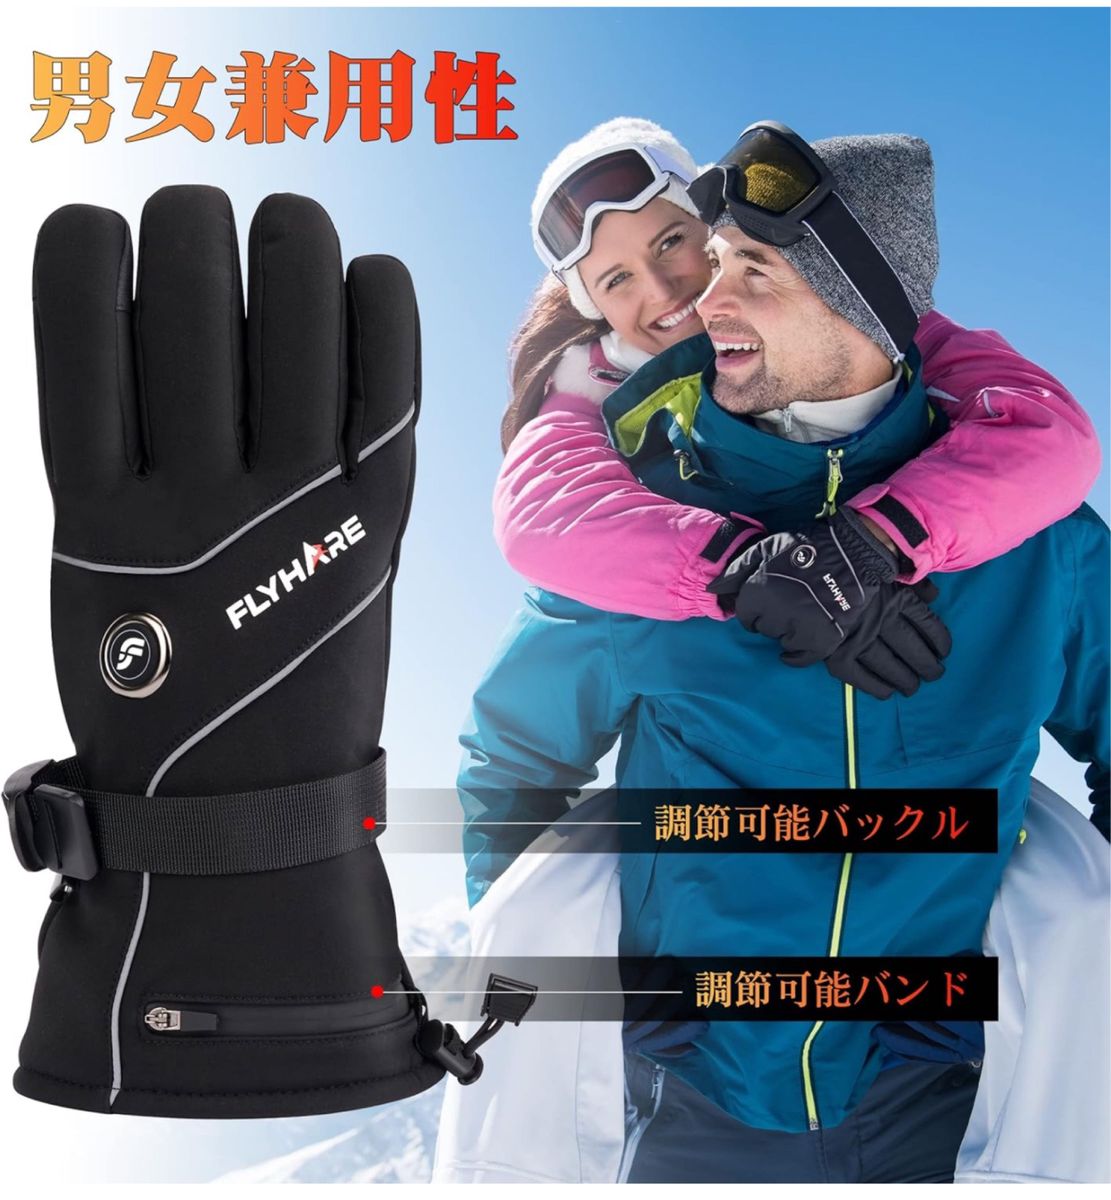 電熱手袋 電熱グローブ ヒーターグローブ テリー手袋 スキー手袋 3段階温度調節 5000mAhバッテリー*2個 充電式【XL】